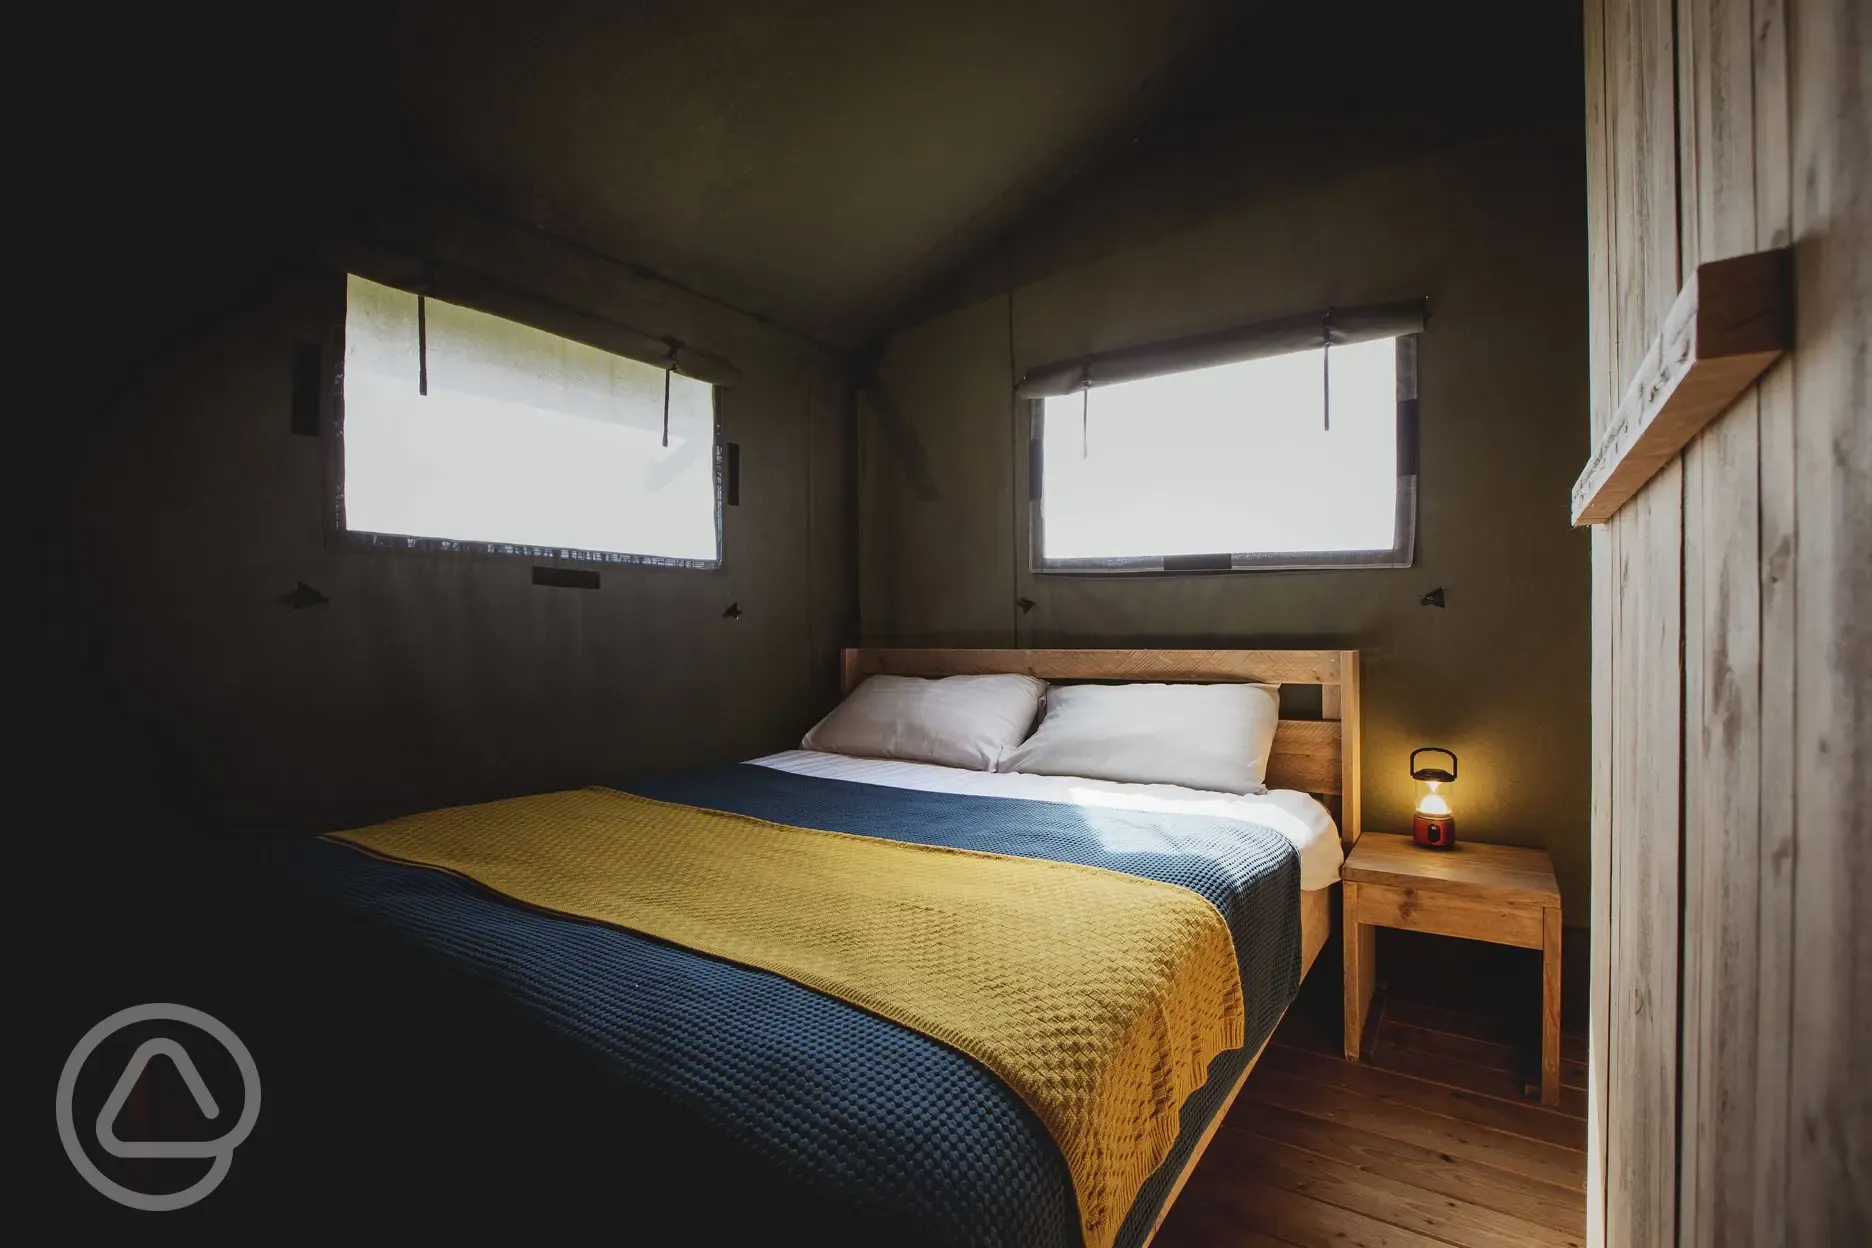 Safari lodge bedroom